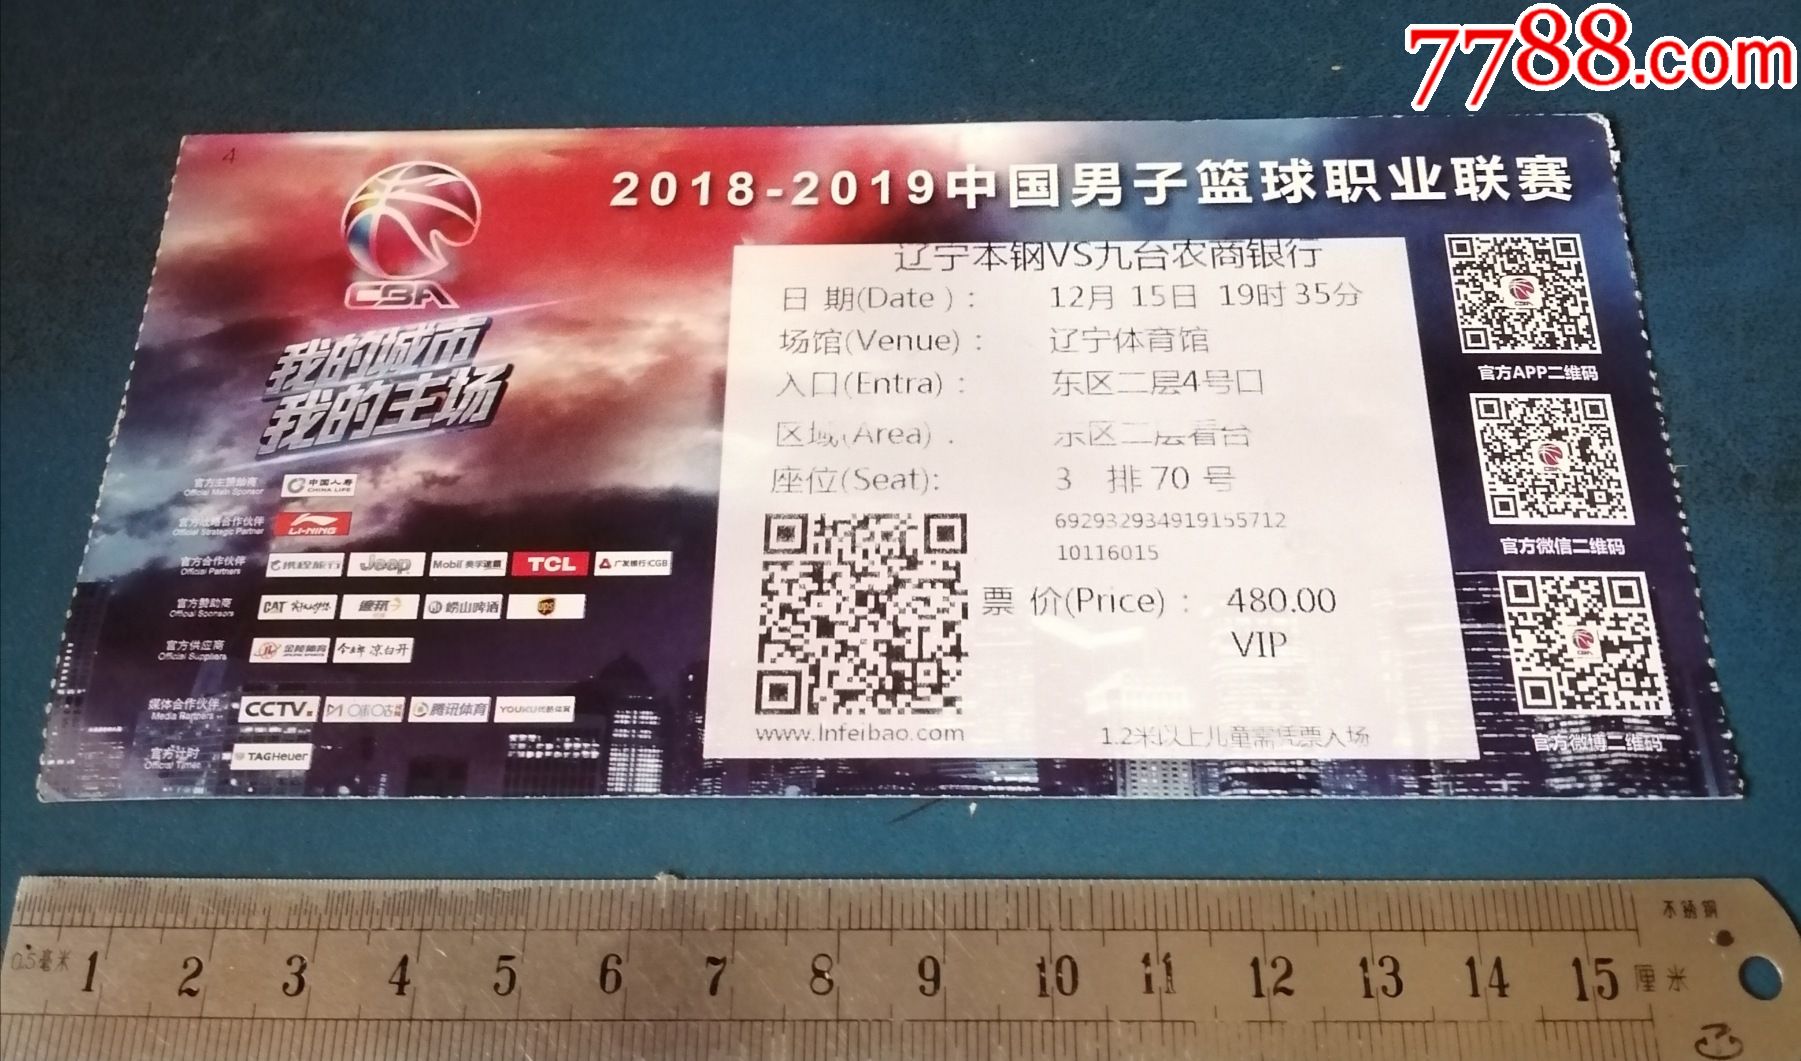 2018--2019中国男子篮球联赛《辽宁本钢--对--九台农商银行》